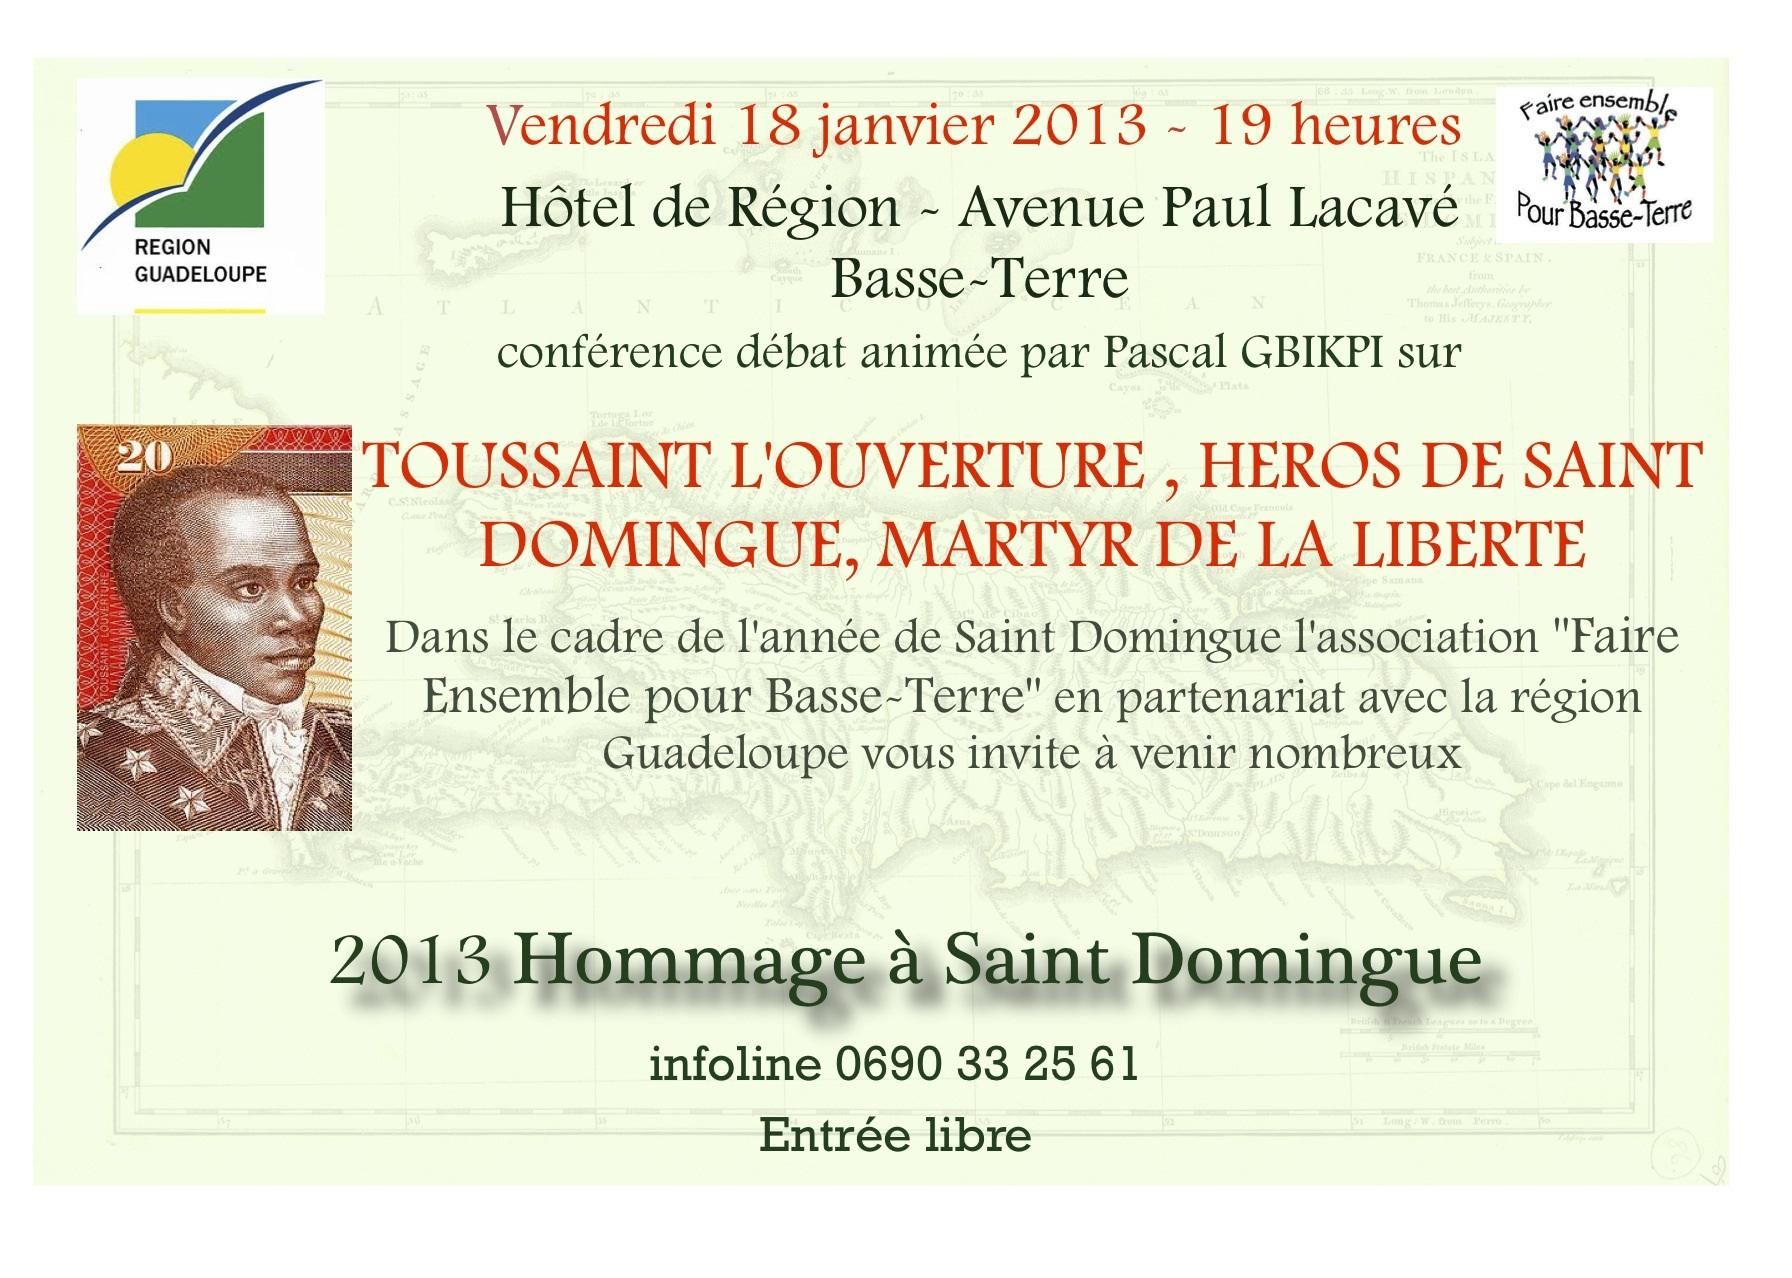 Toussaint Louverture, héros de la liberté, martyr de Saint-Domingue”